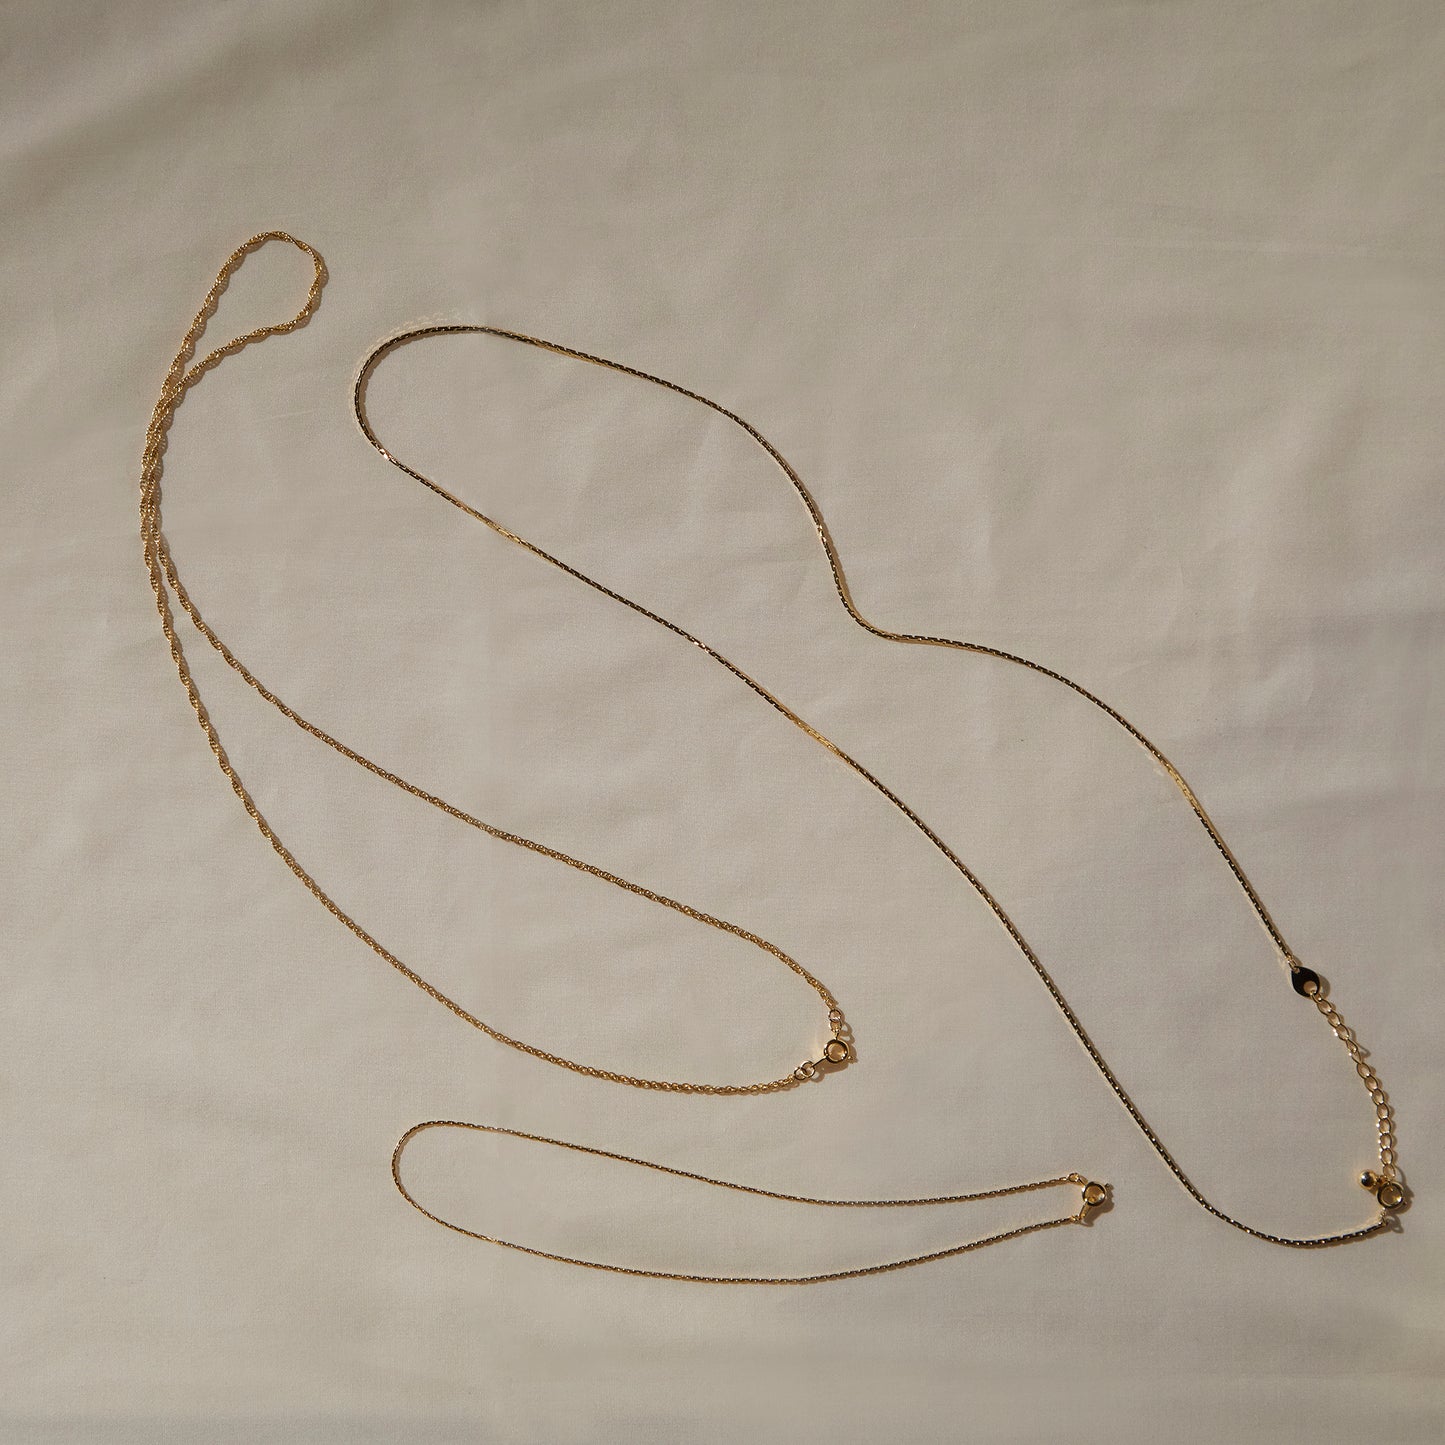 131 Vintage Venetian Chain Long Necklace